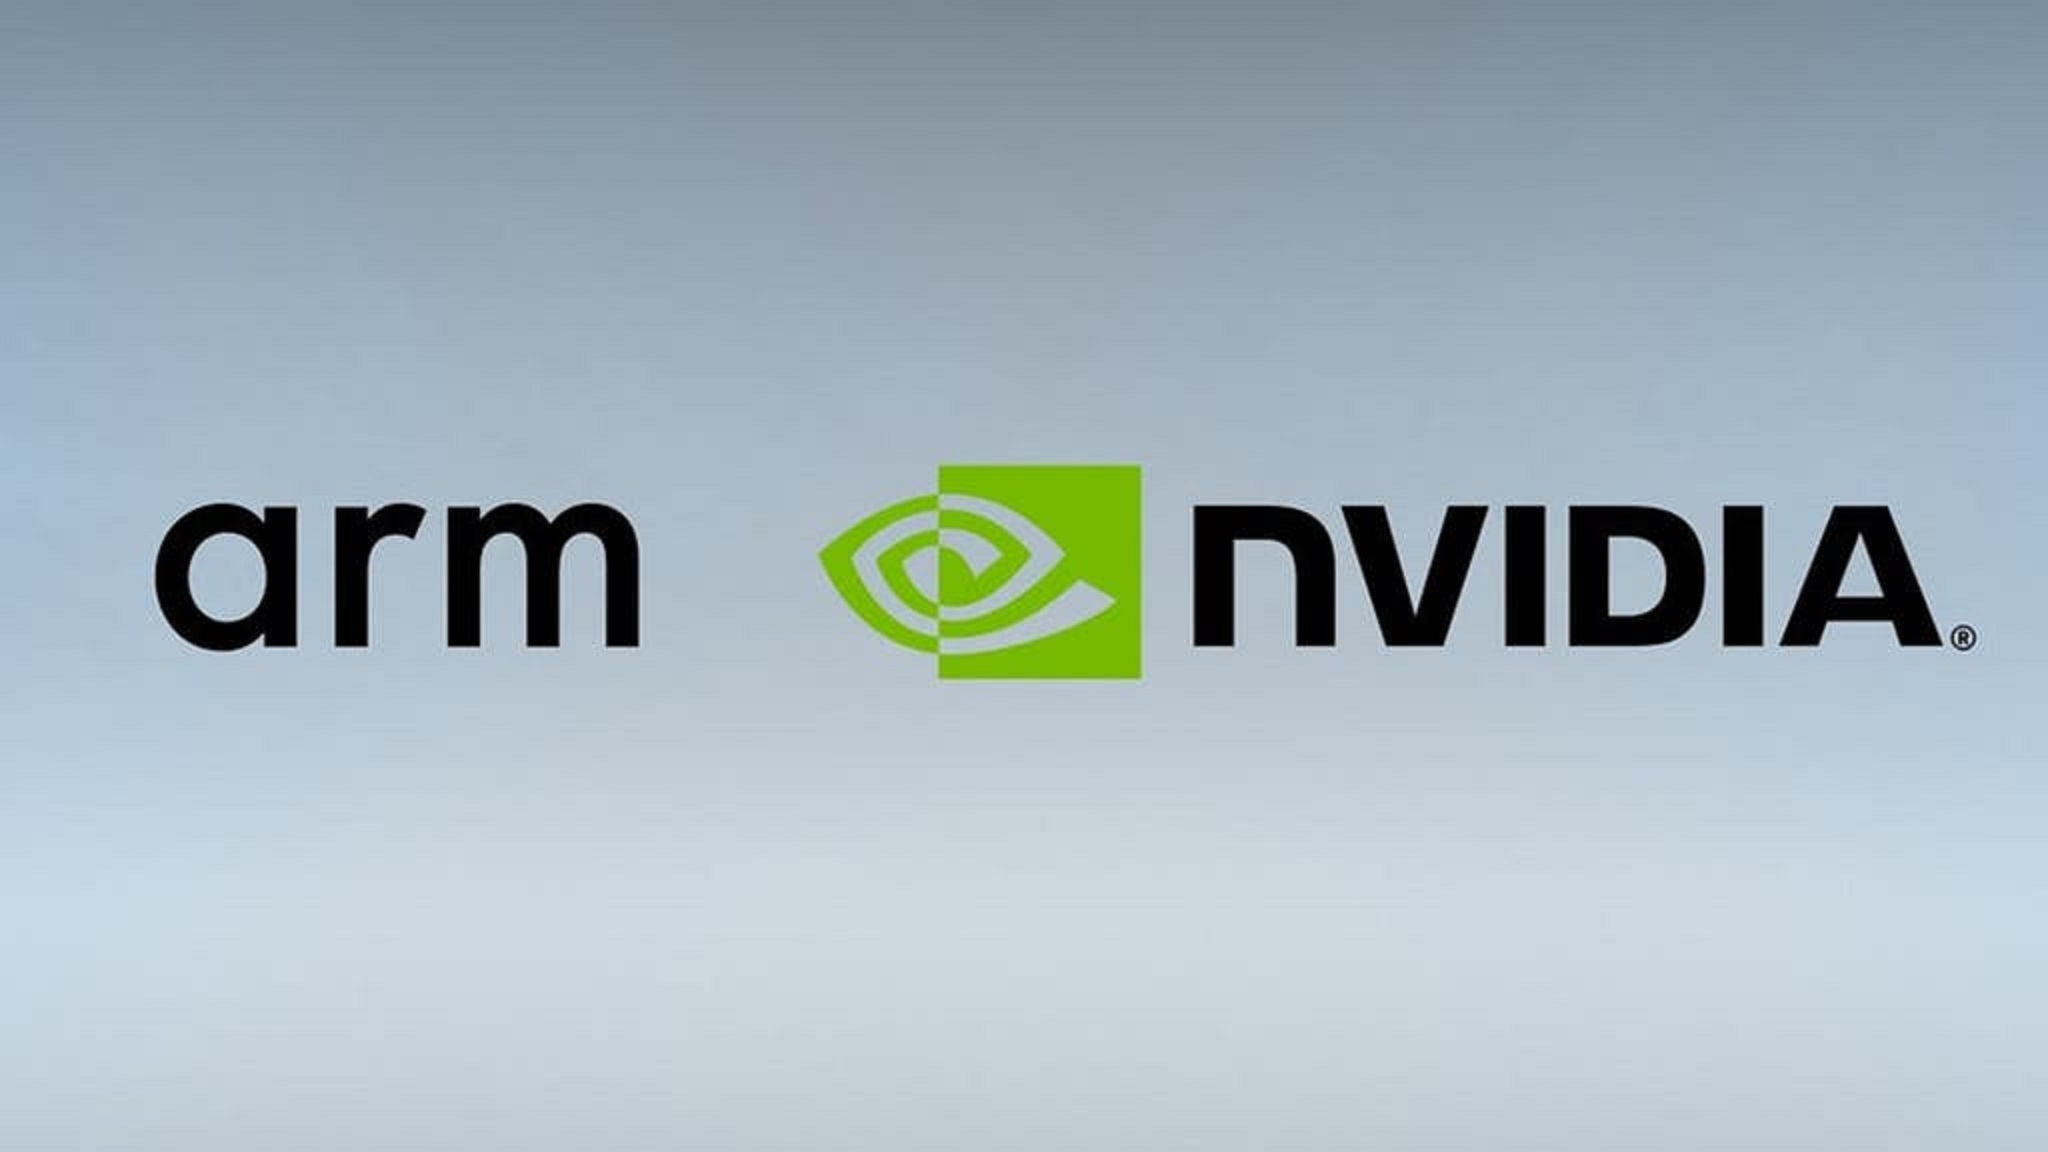 Arm and Nvidia company logos